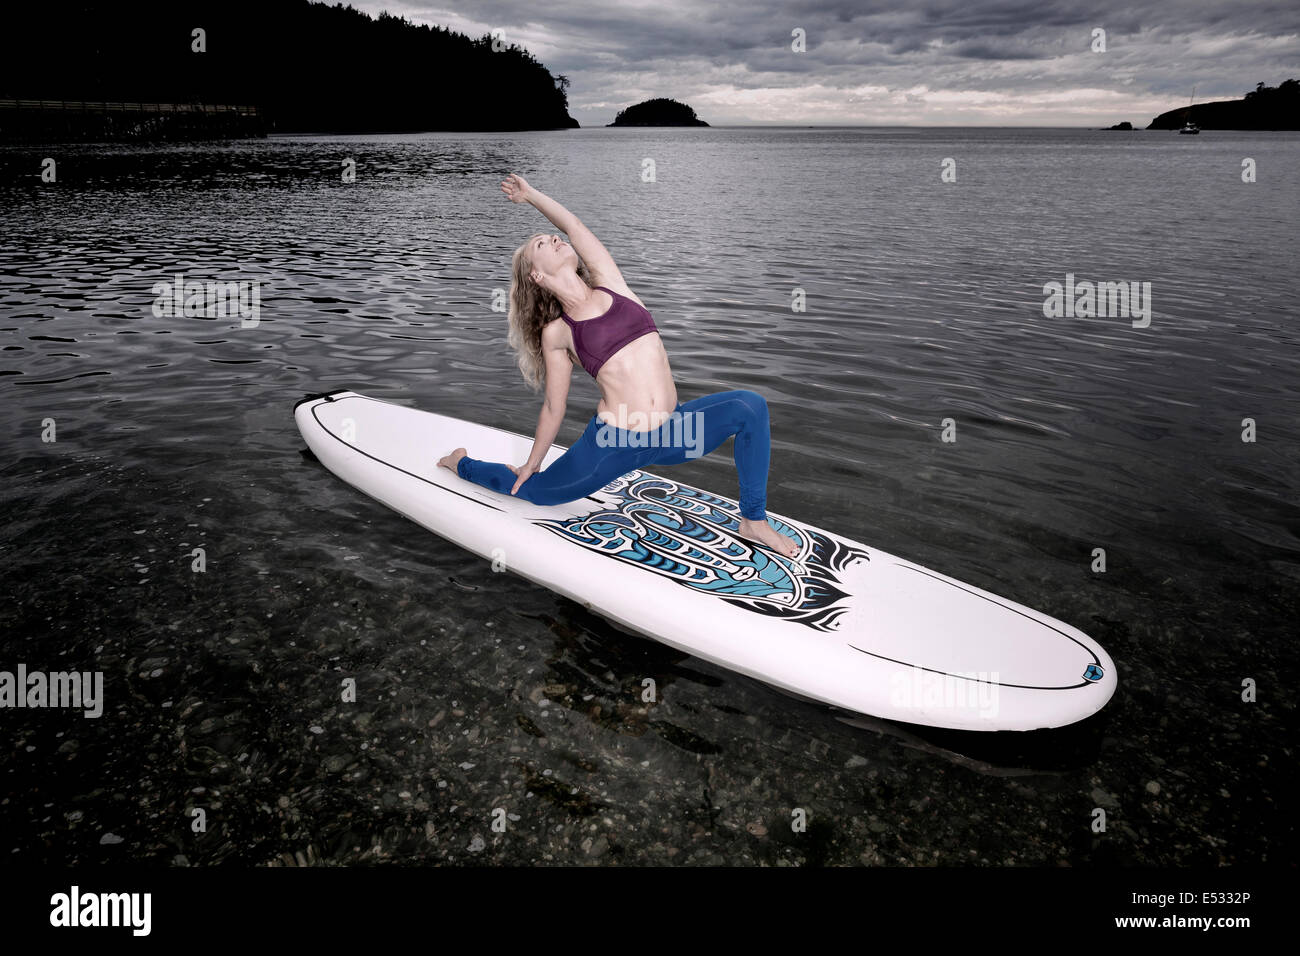 WASHINGTON - Professeur de Yoga Carly Hayden se réchauffer sur un, SUP (stand up paddle board), dans la région de Bowman Bay. Banque D'Images